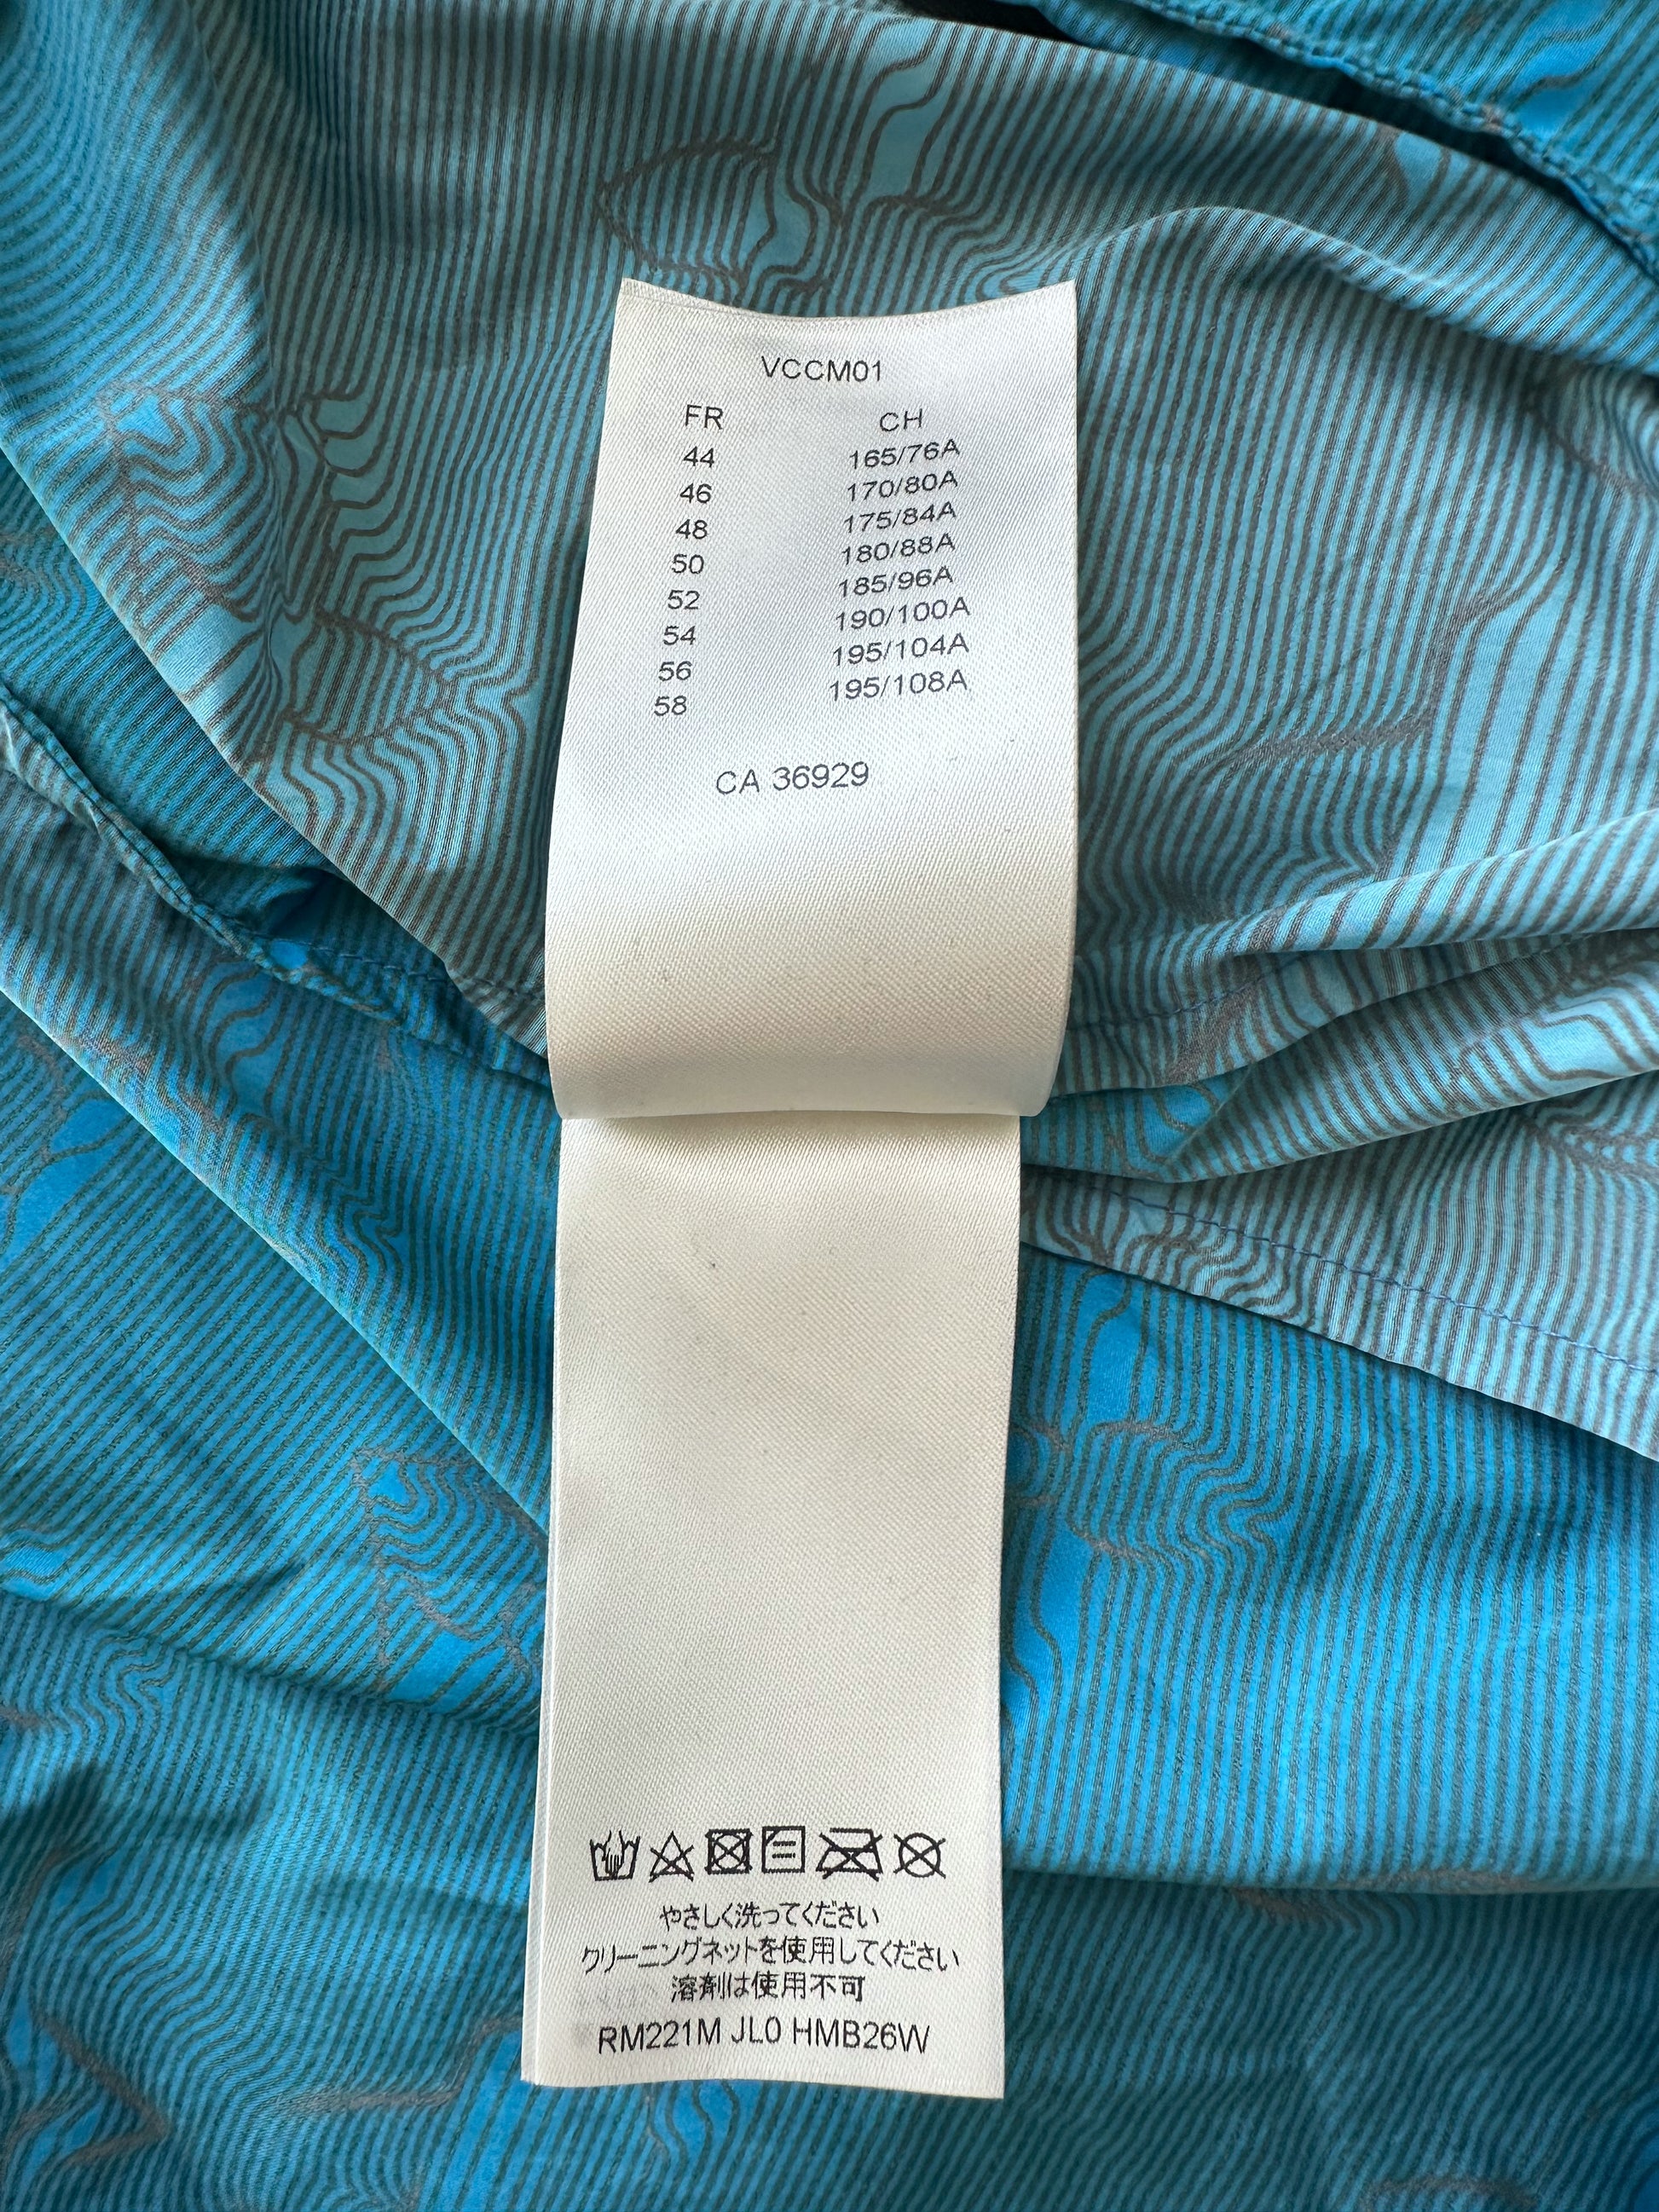 Louis Vuitton 2054 Monogram Reversible Jacket